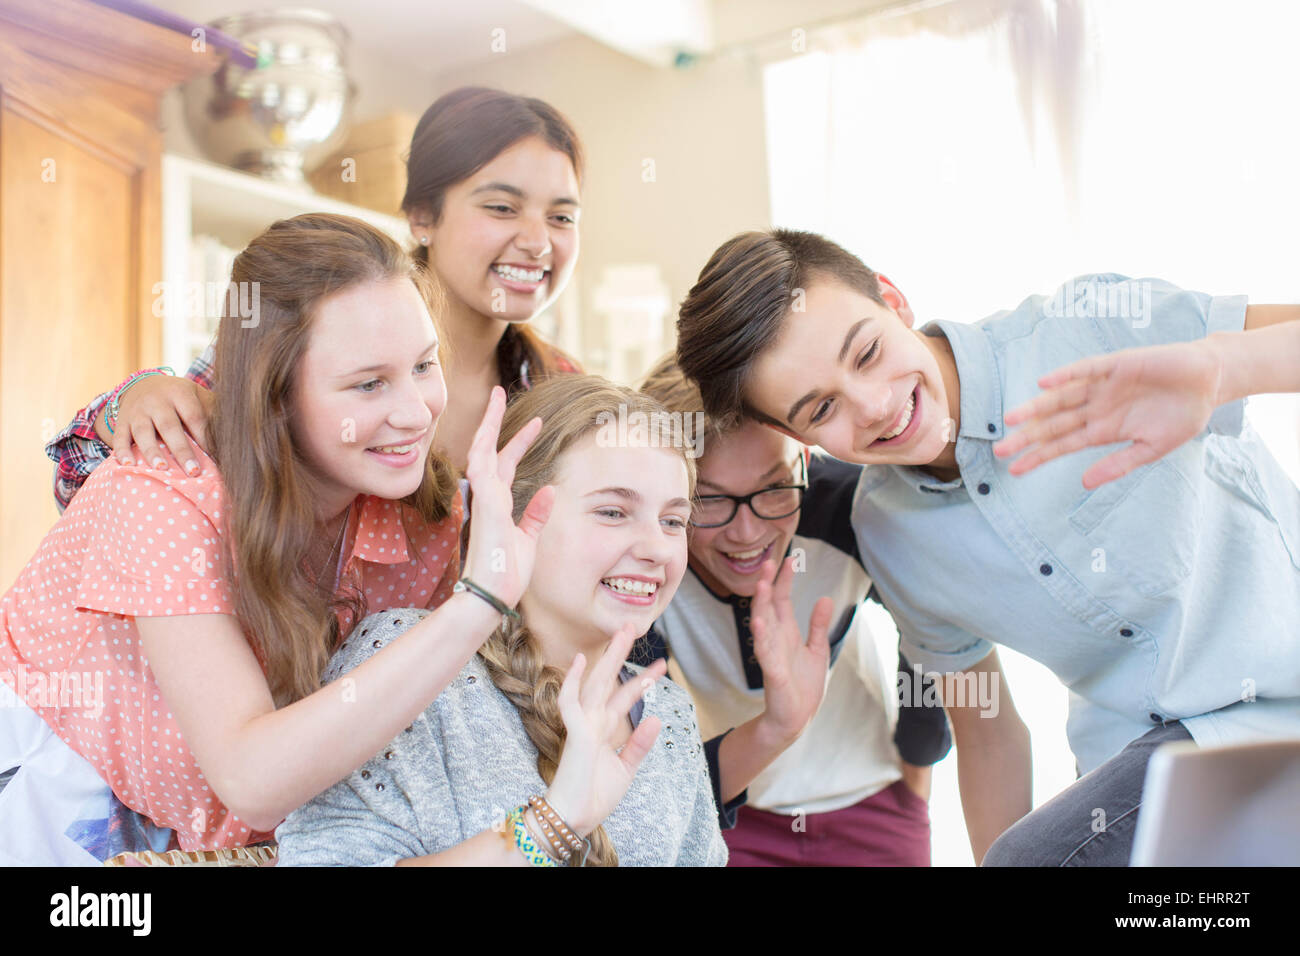 Groupe d'adolescents en forme lors de la communication via internet Banque D'Images